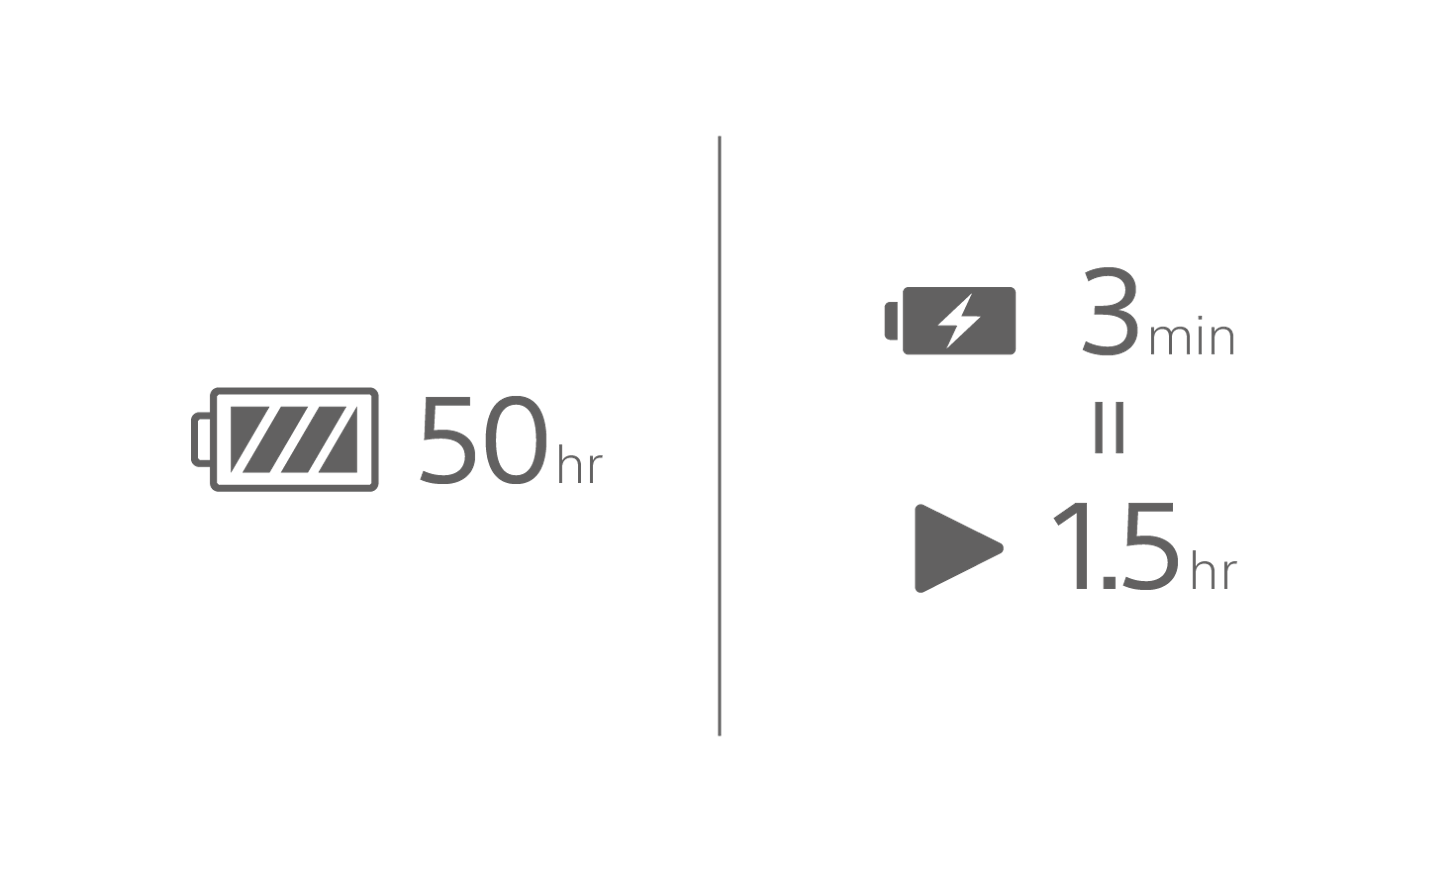 50시간이라는 텍스트가 표시된 배터리 아이콘 이미지, 3분이라는 텍스트가 표시된 배터리 충전 아이콘과 그 아래에 1.5시간이라는 텍스트가 표시된 재생 아이콘